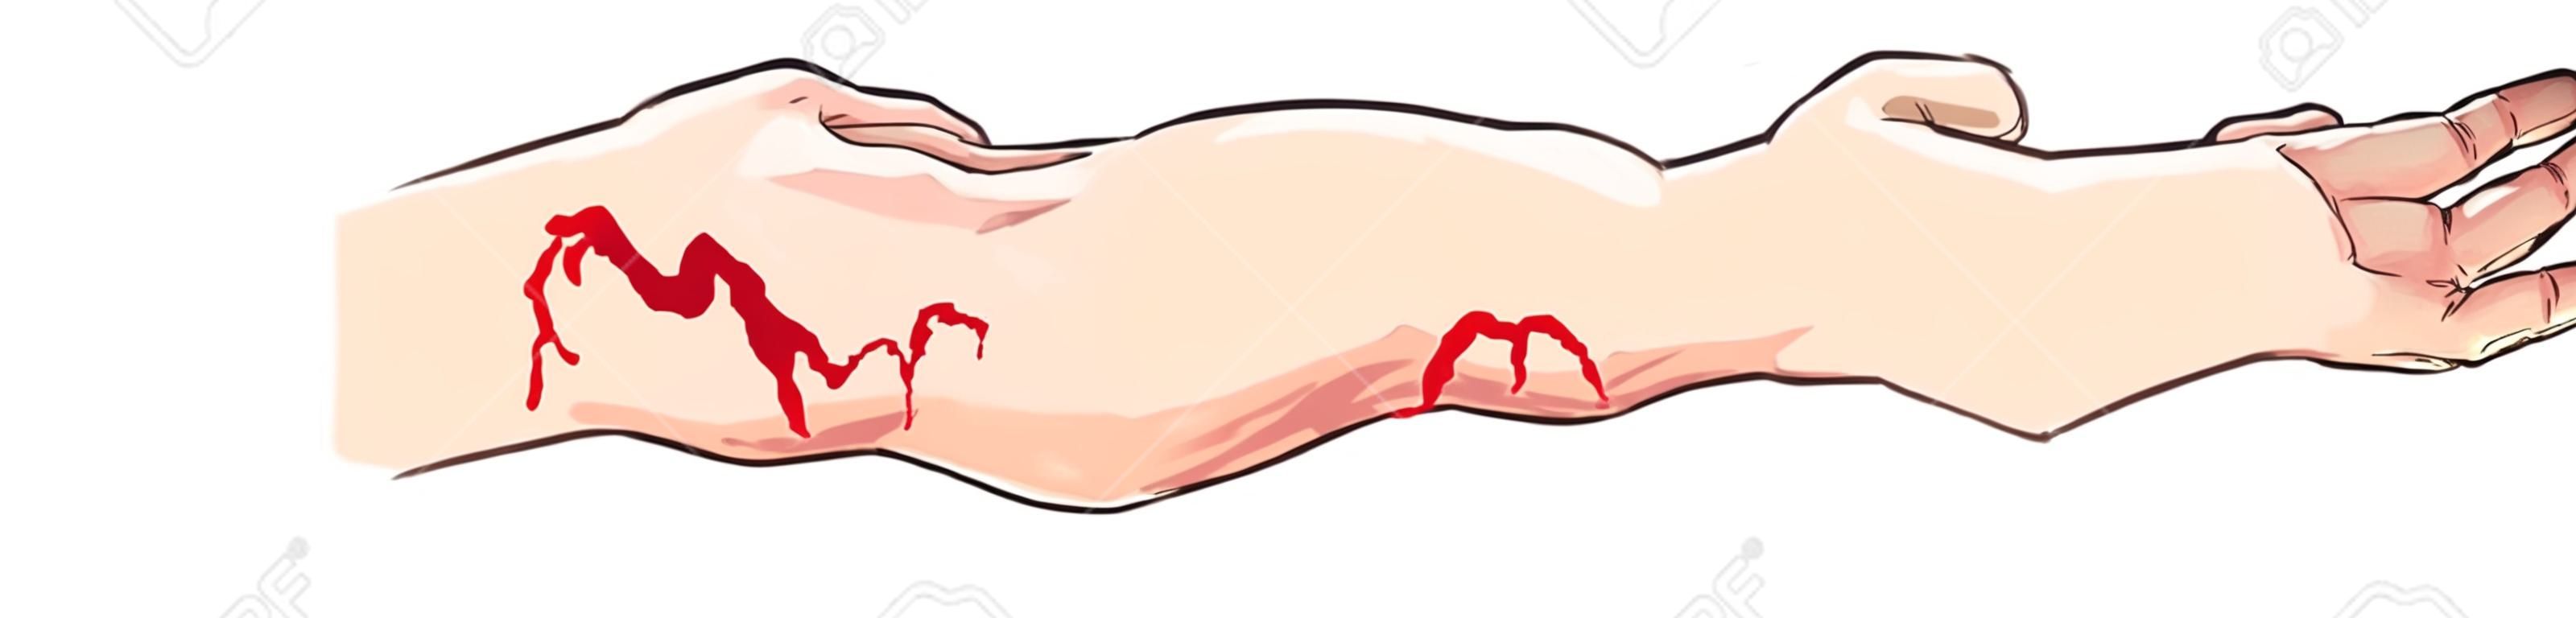 Vektor-Illustration eines Arterielle und venöse Blutungen